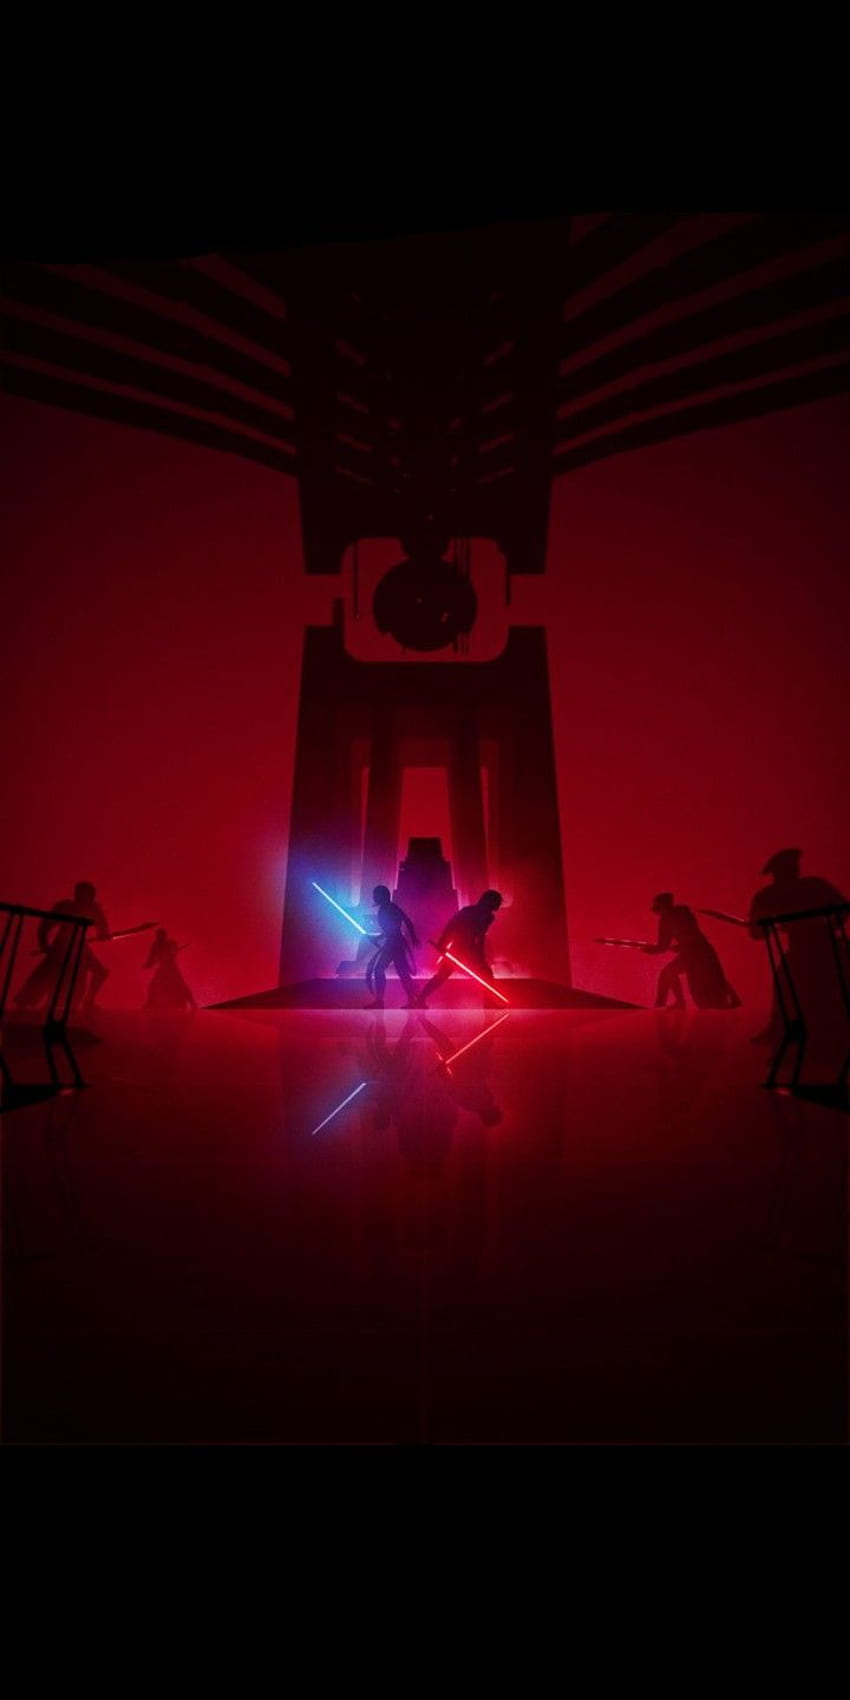 Duelo de sables de luz en la sala del trono de Star Wars TLJ por Marco Manev. 18:9. guerra de las galaxias, cartel de guerra de las galaxias, pintura de guerra de las galaxias fondo de pantalla del teléfono